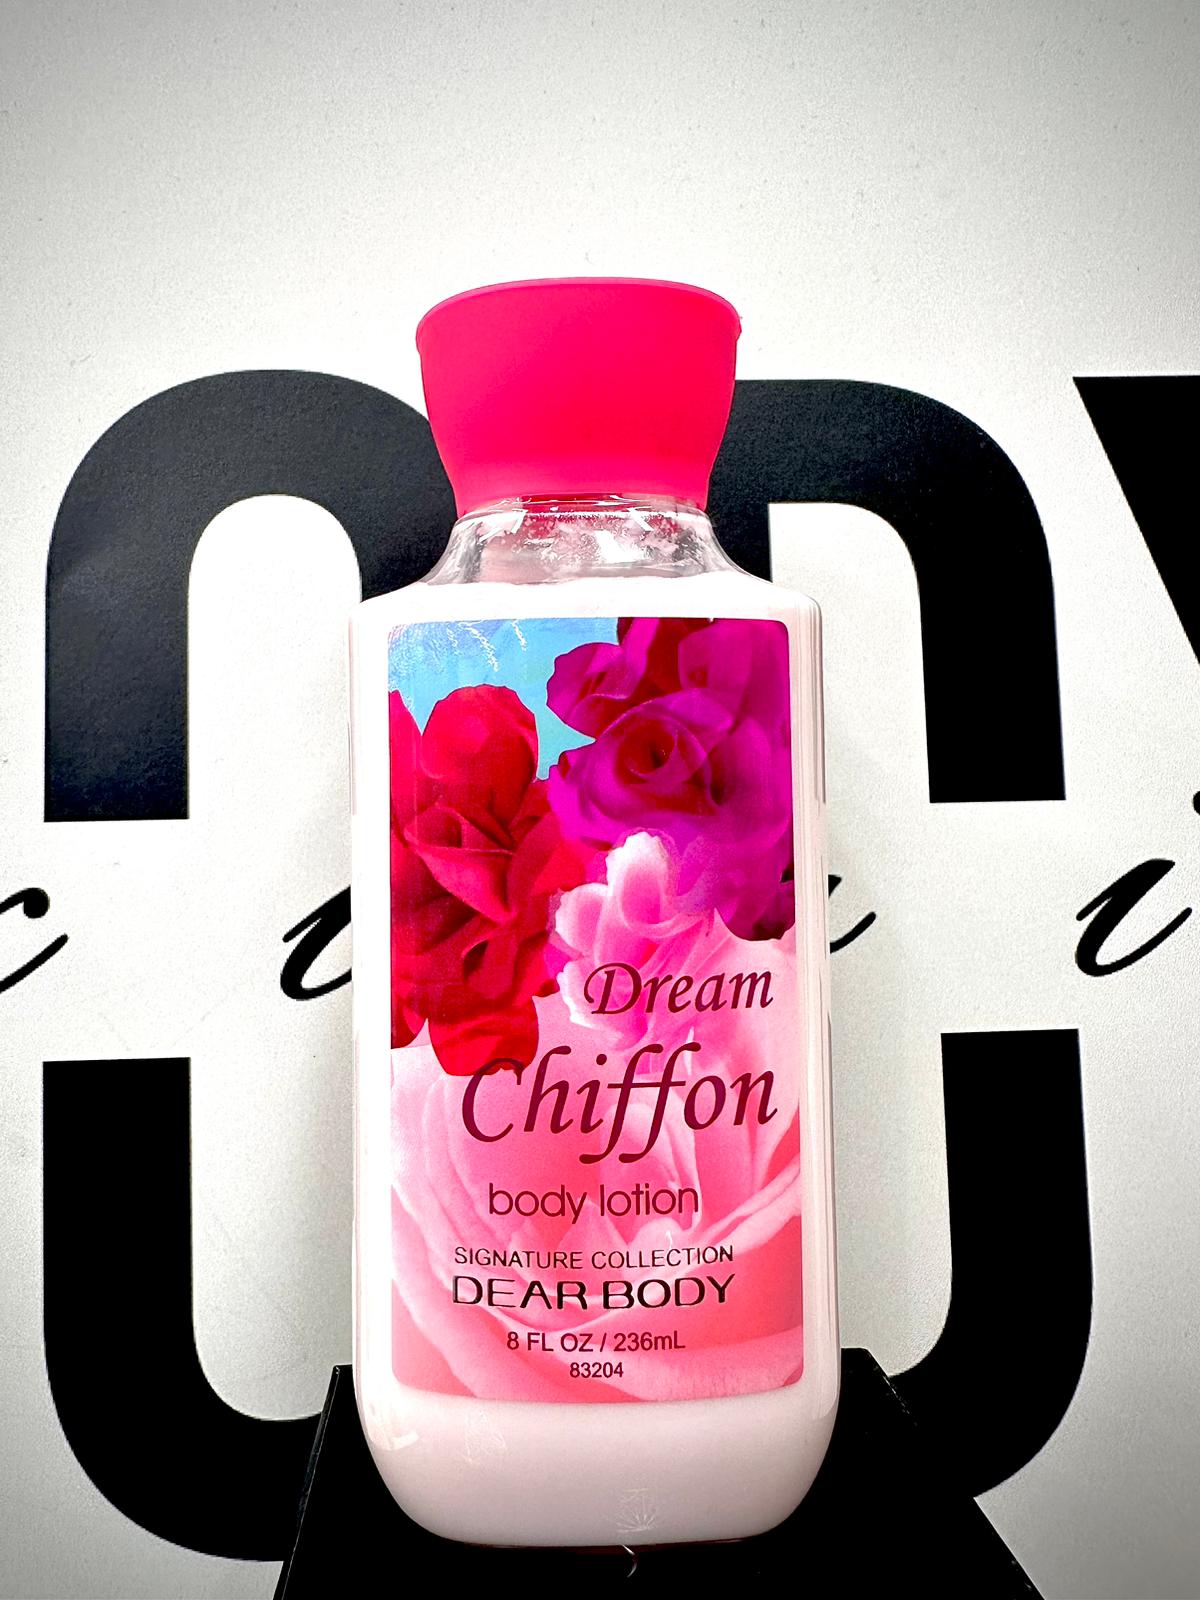 DREAM CHIFFON BODY LOTION 8FL OZ / 236 ml